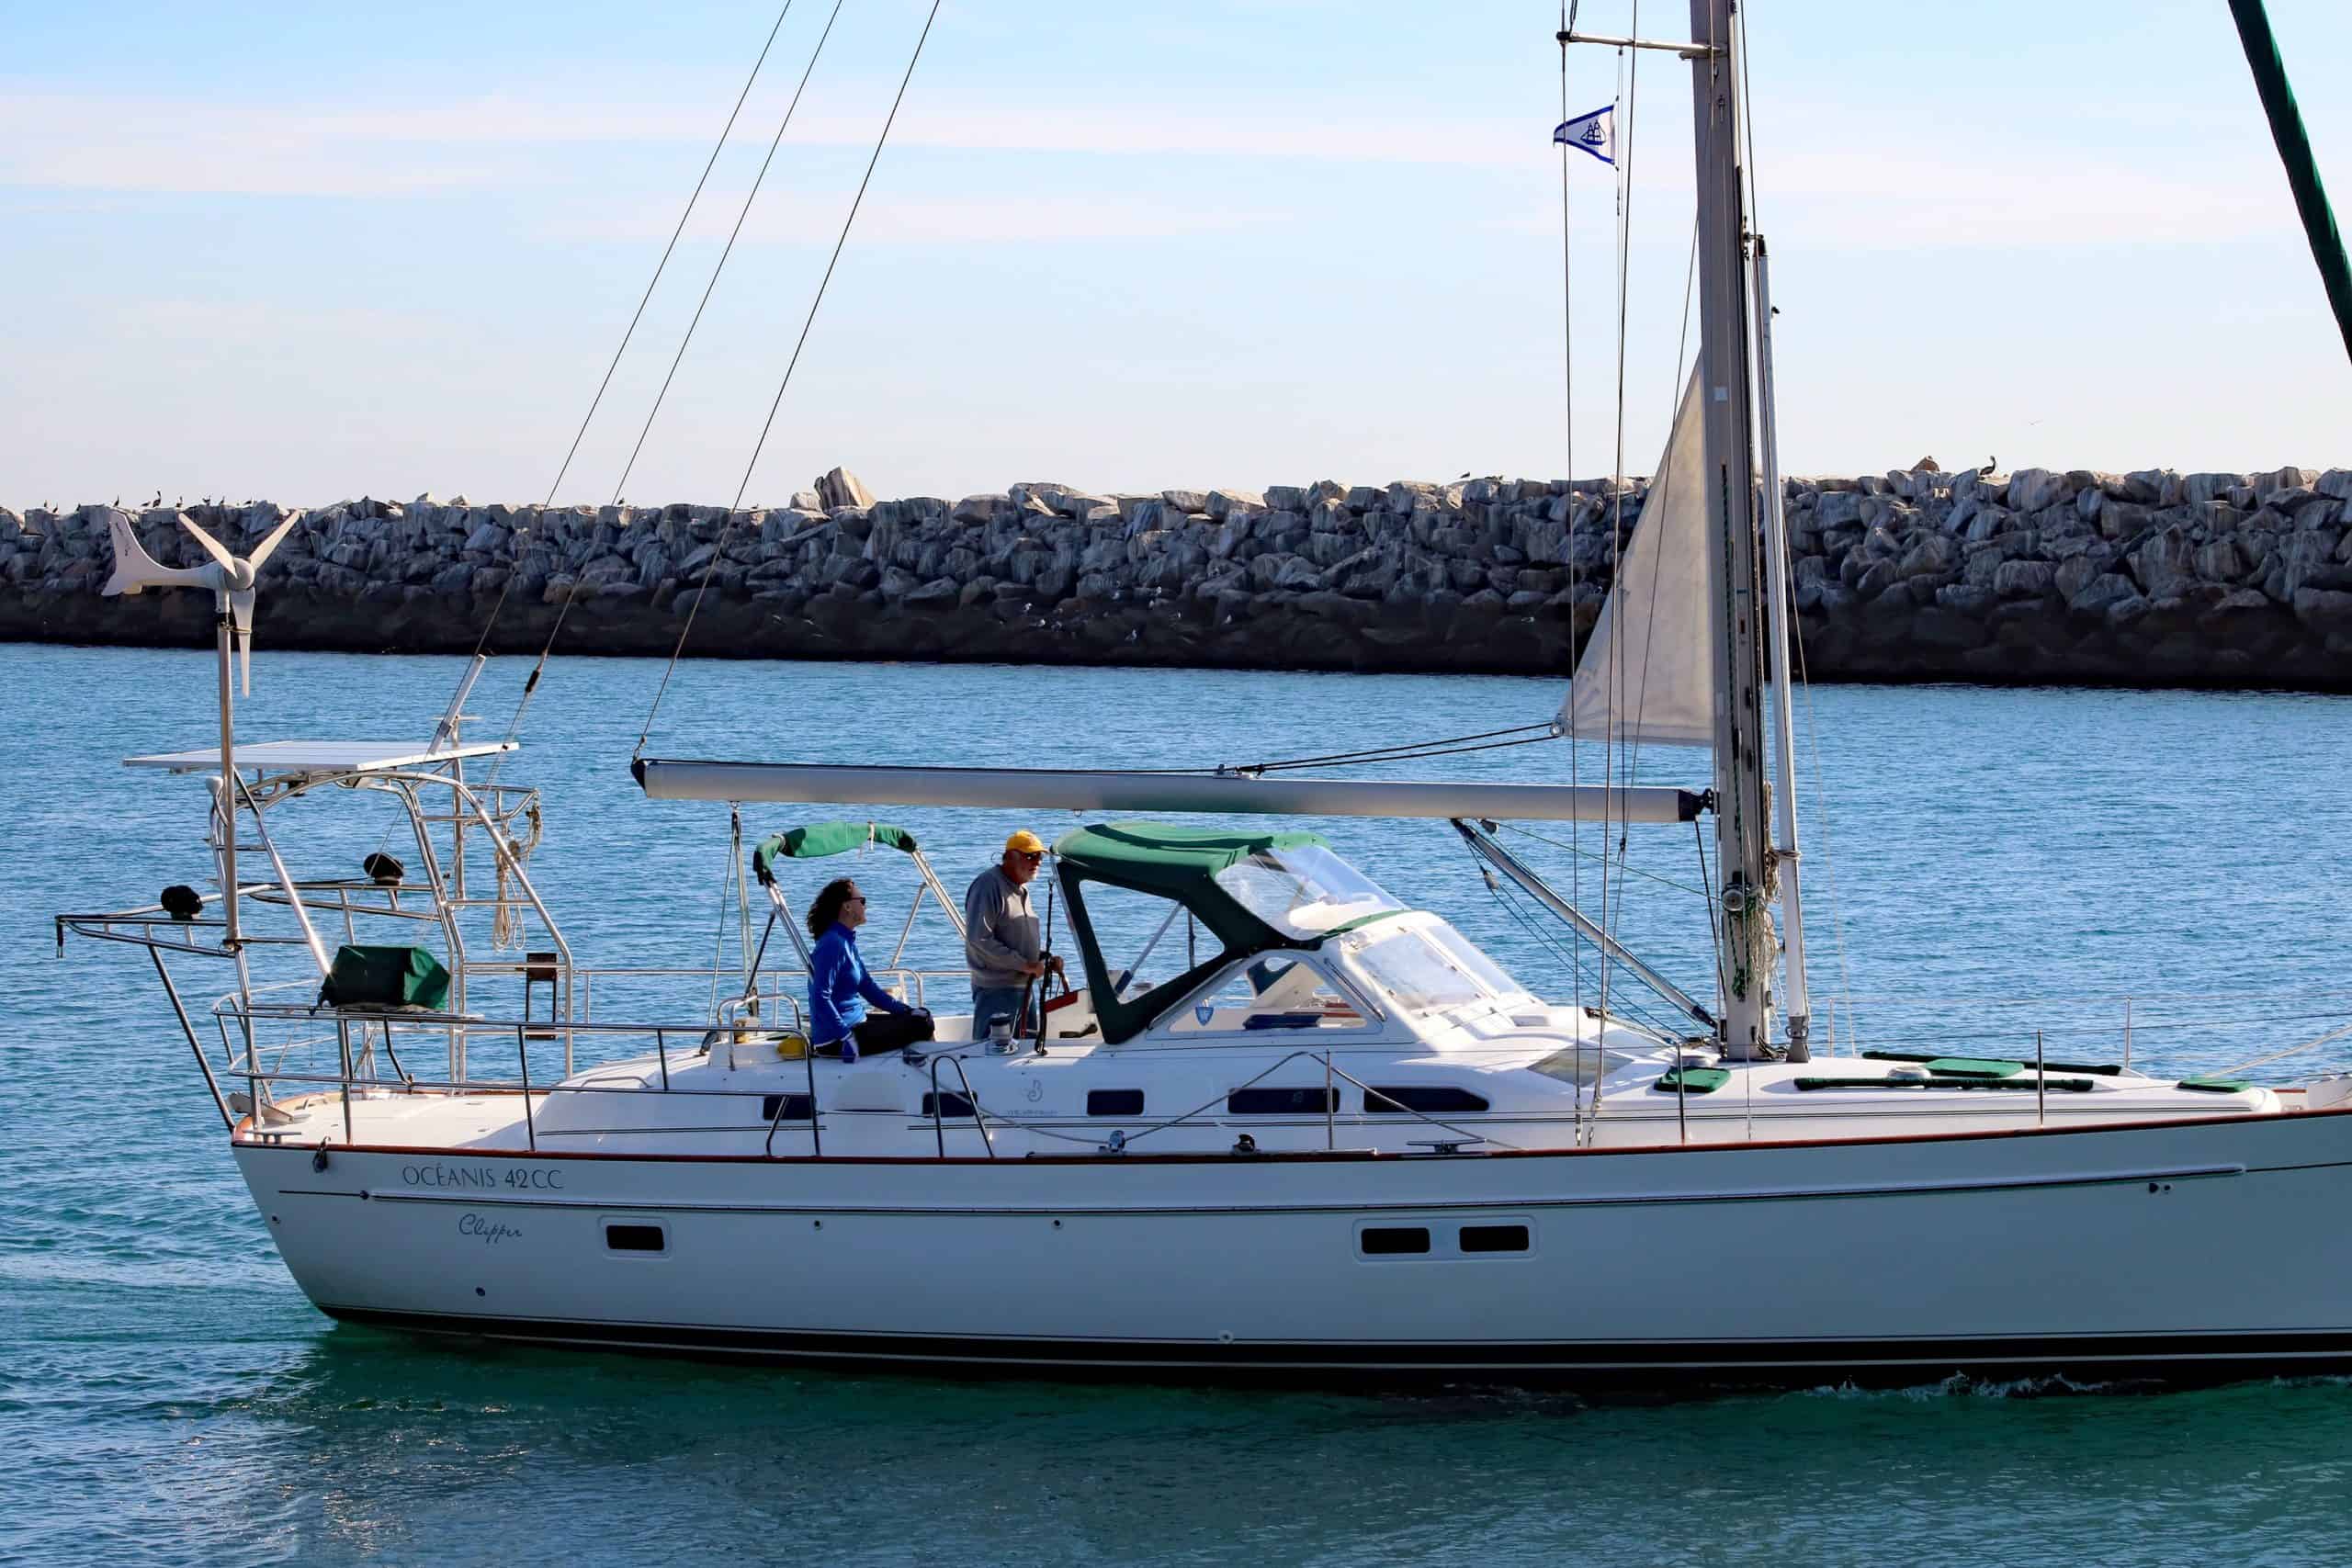 42' beneteau sailboat